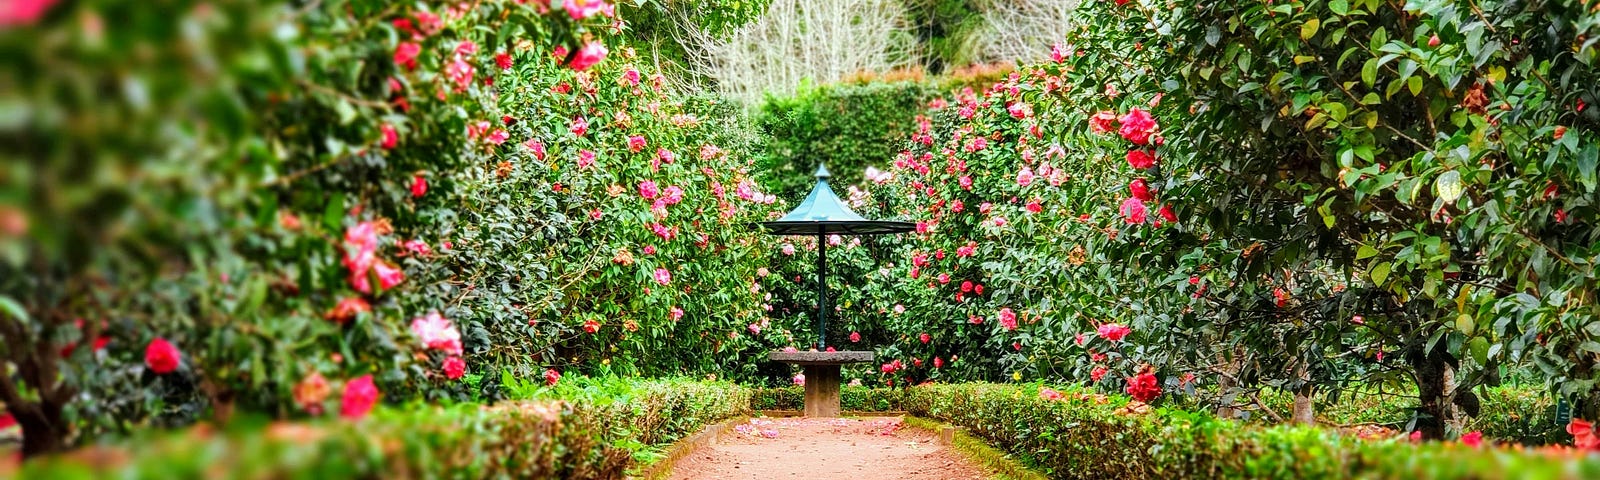 A beautiful garden